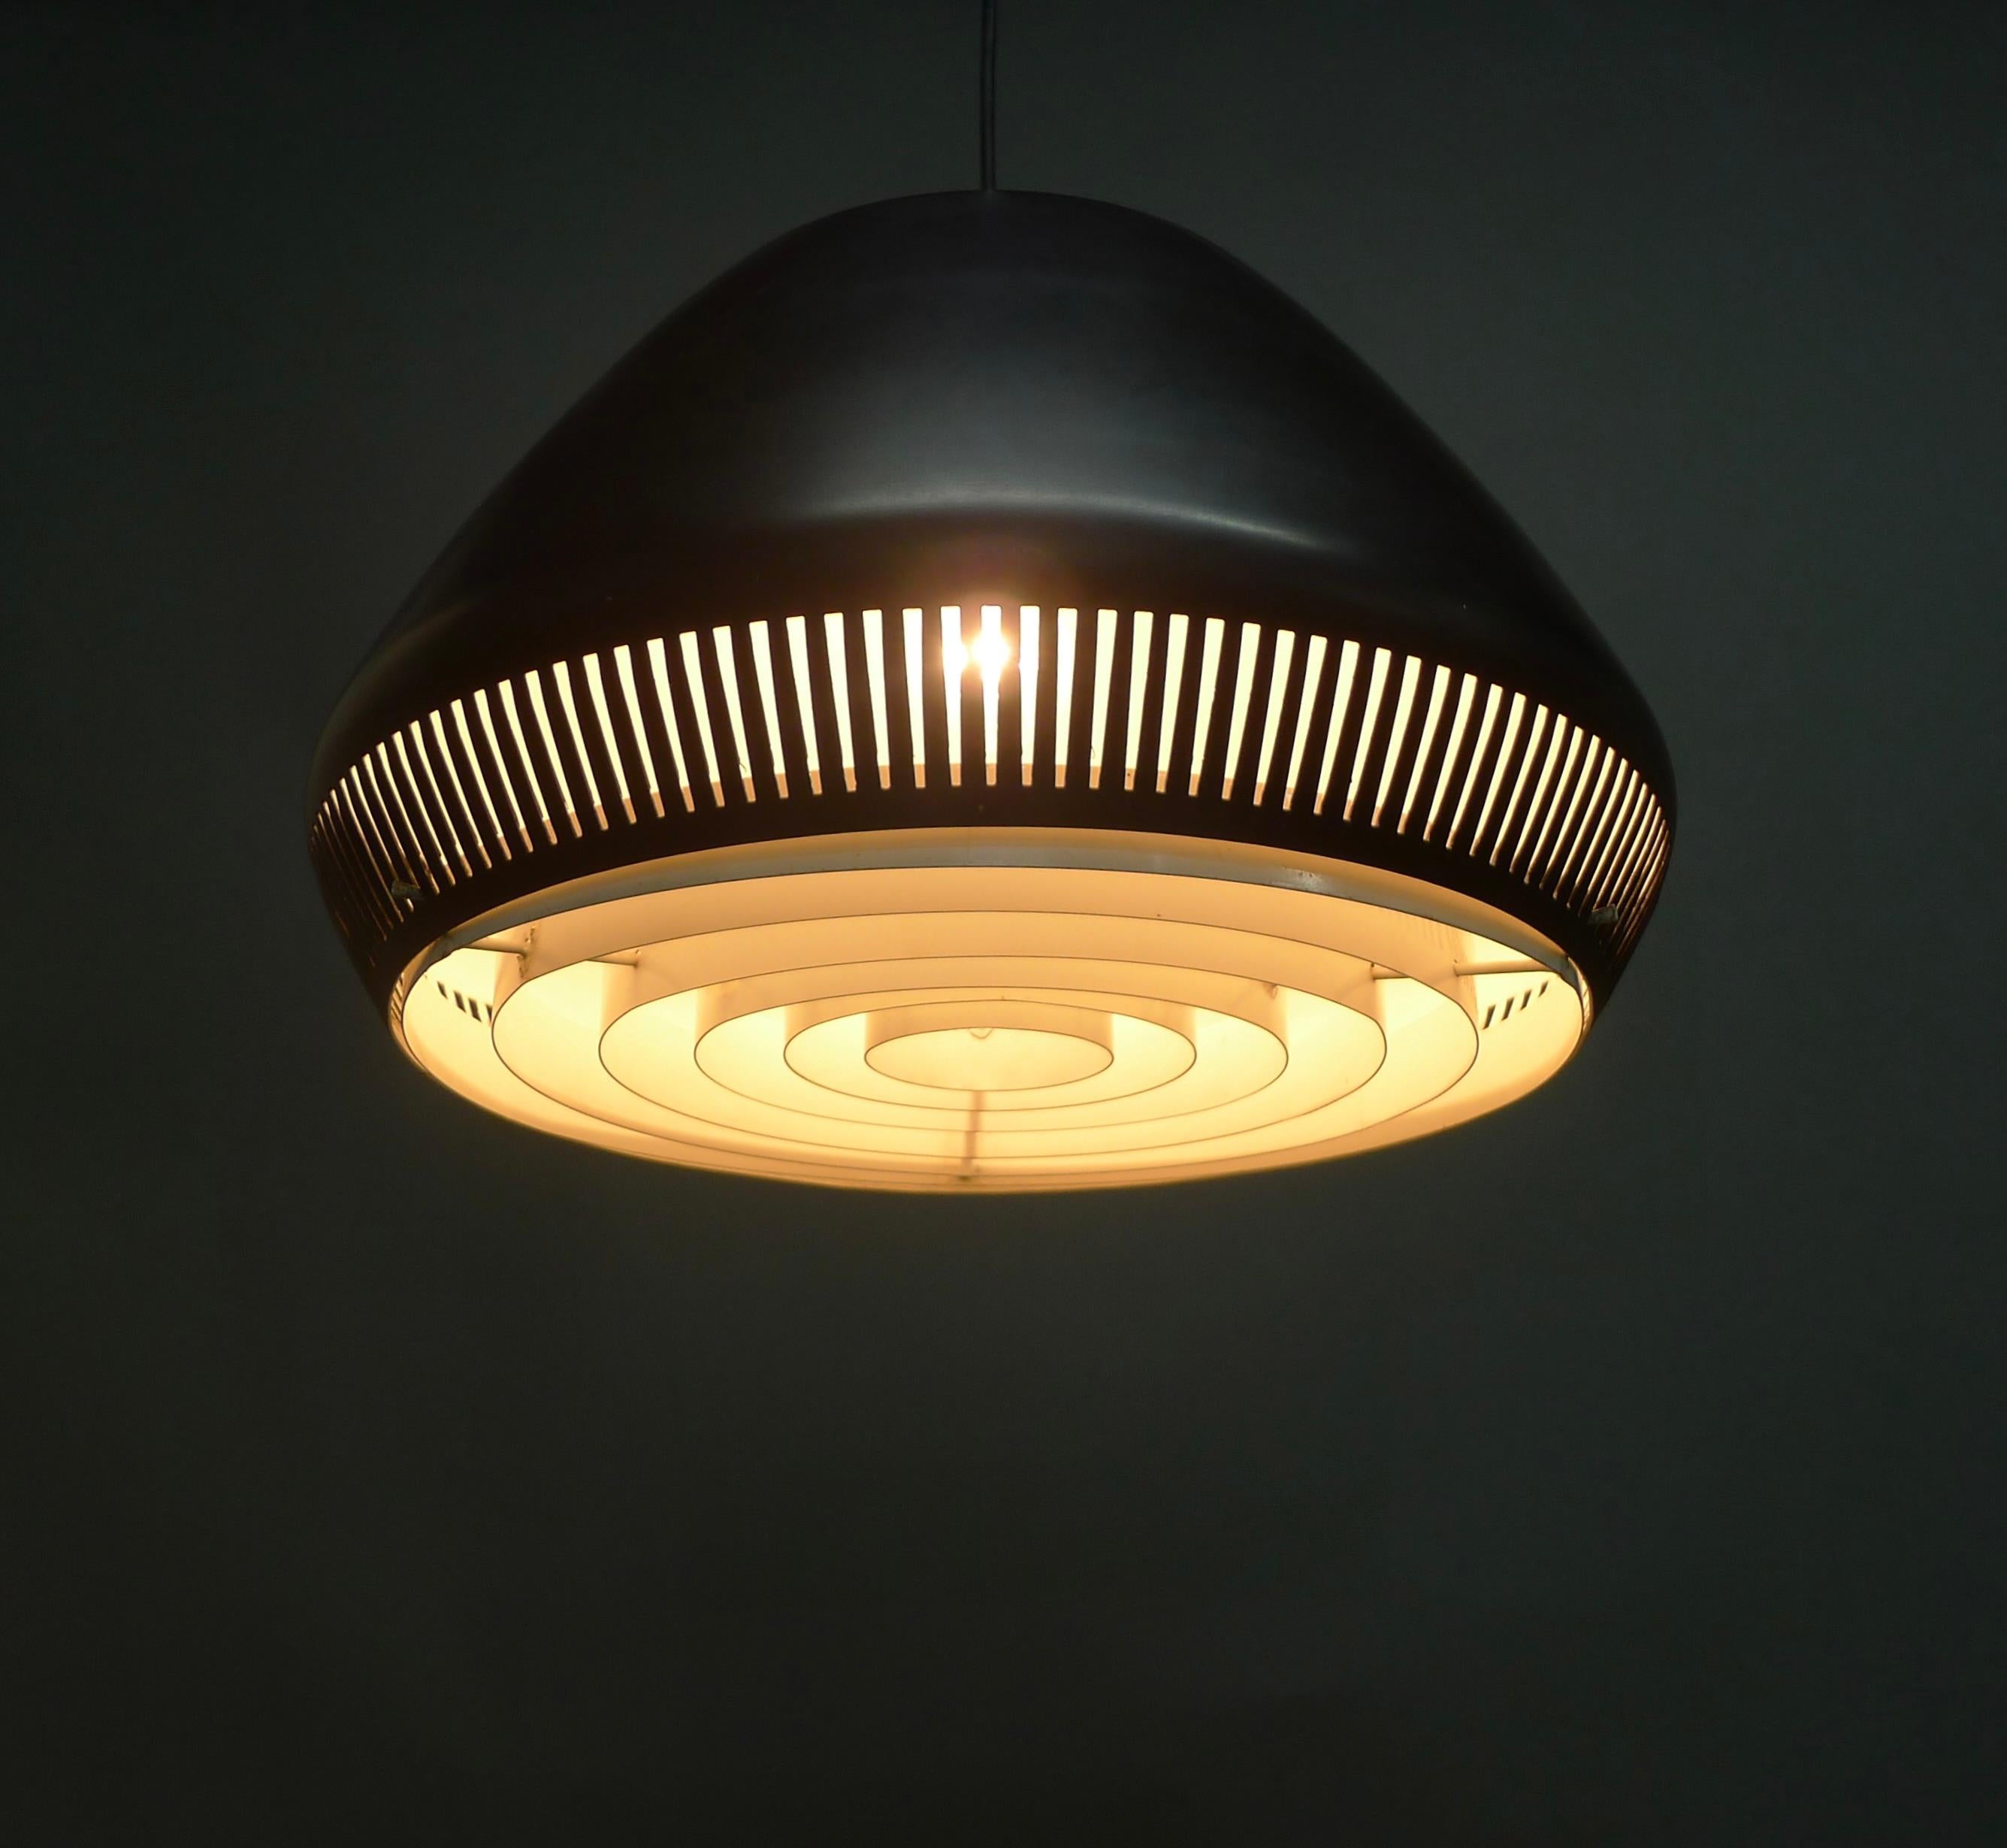 Italian Stylish 1950s Pendant Light, attributed to Gio Ponti for Greco Illuminazione